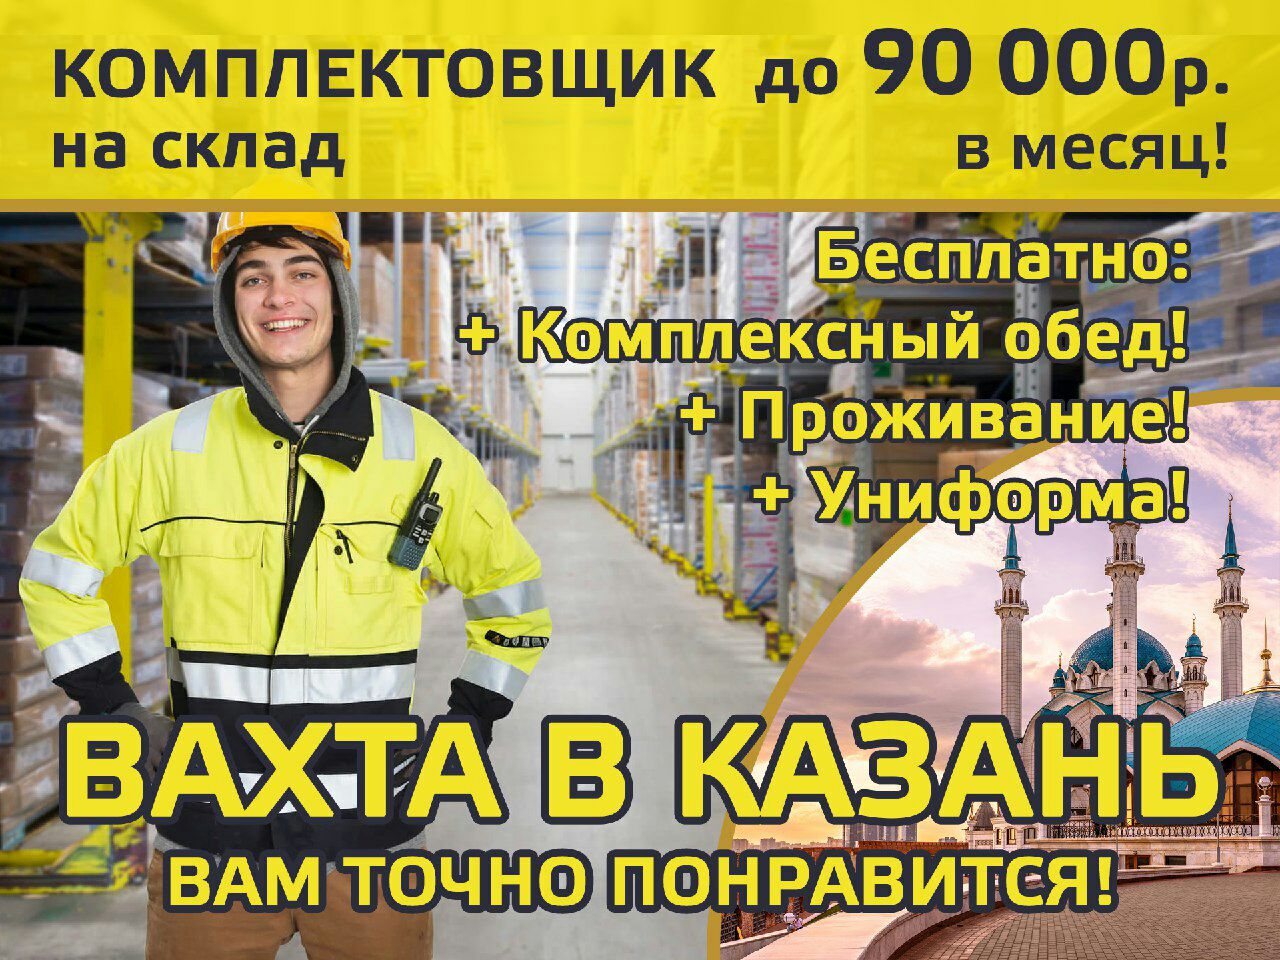 Новосибирск работа вахтой для мужчин